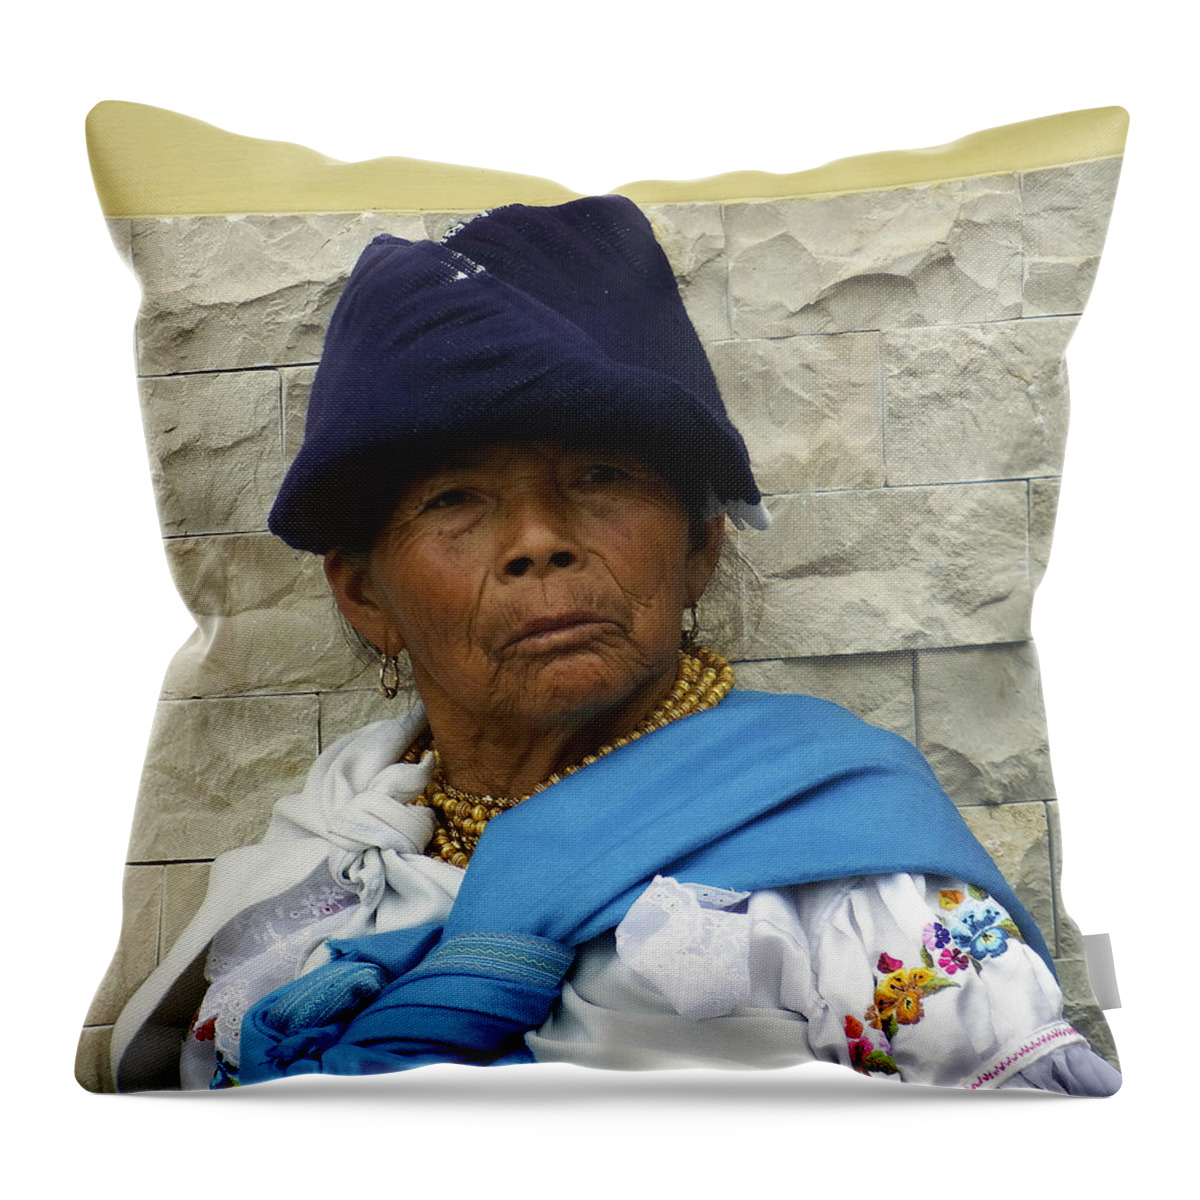 Woman Throw Pillow featuring the photograph Face of Ecuador Woman at Cotacachi by Kurt Van Wagner